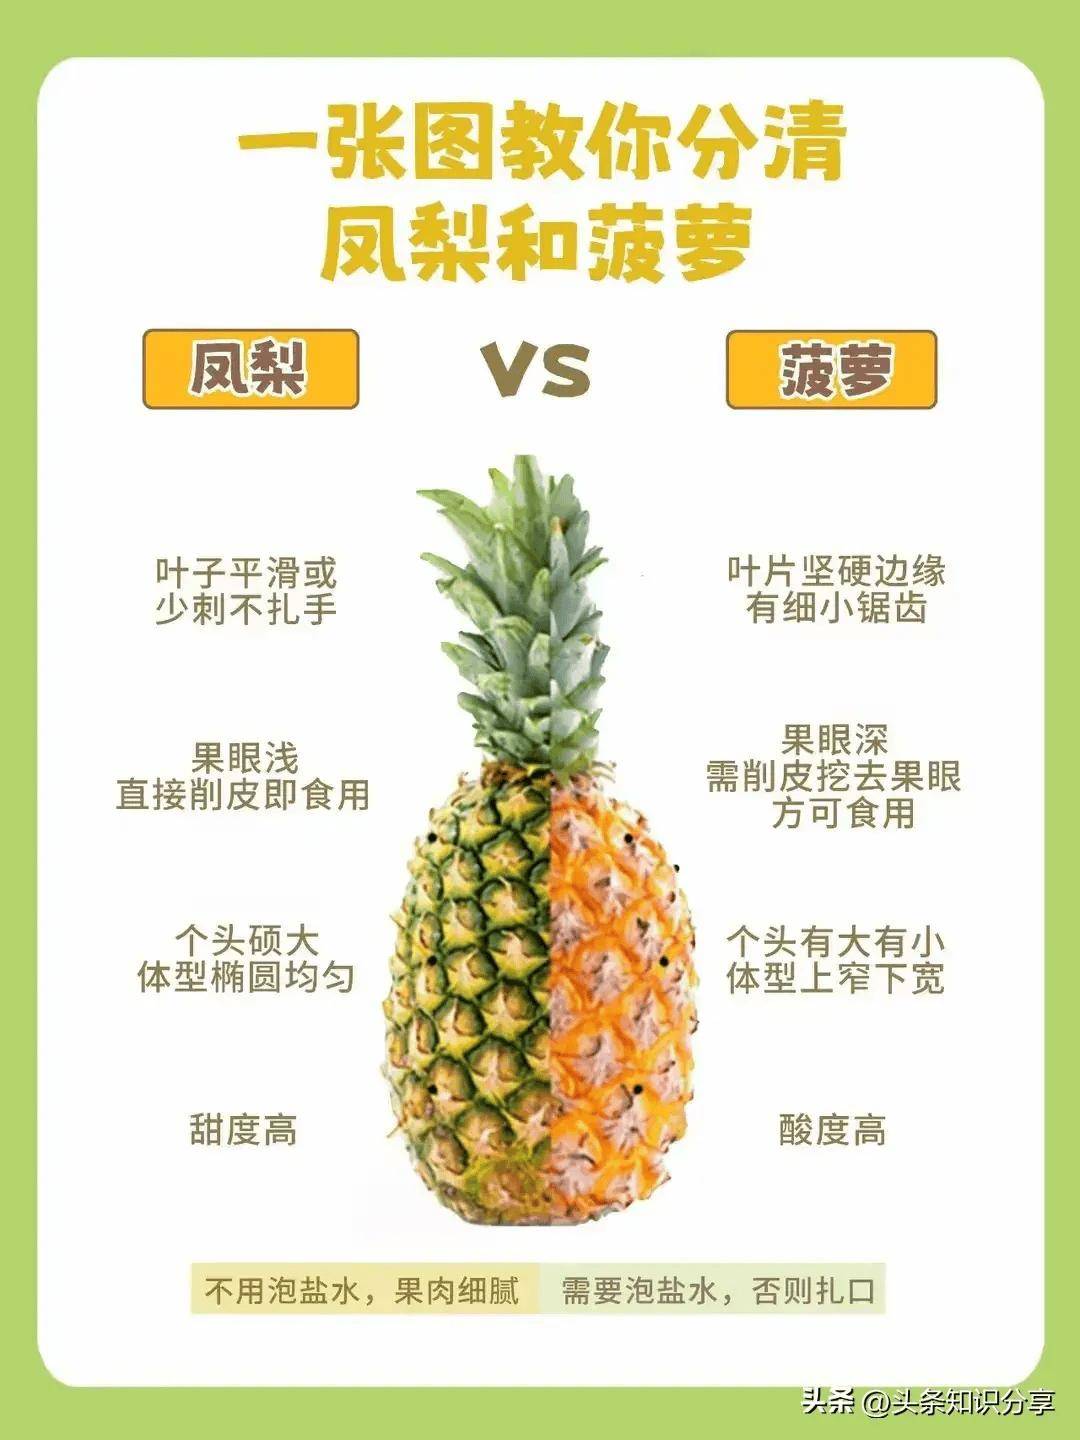 菠萝和凤梨的区别!你能分辨出来吗?